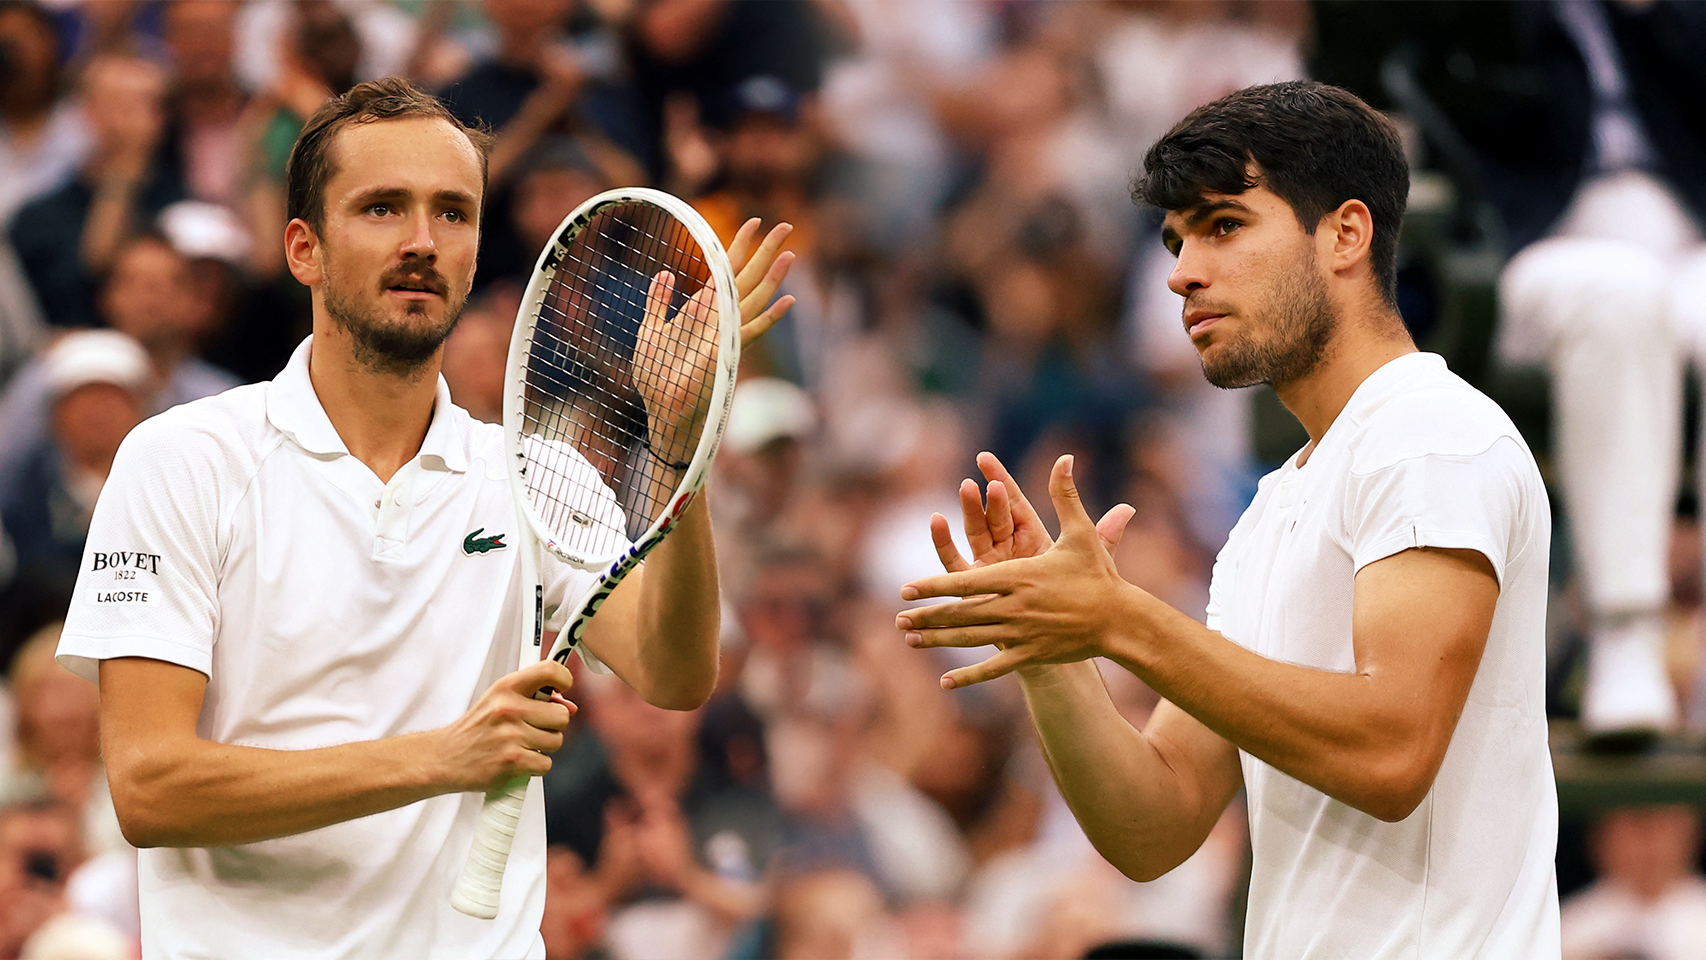 Daniil Medvédev y Carlos Alcaraz, semifinalistas de Wimbledon